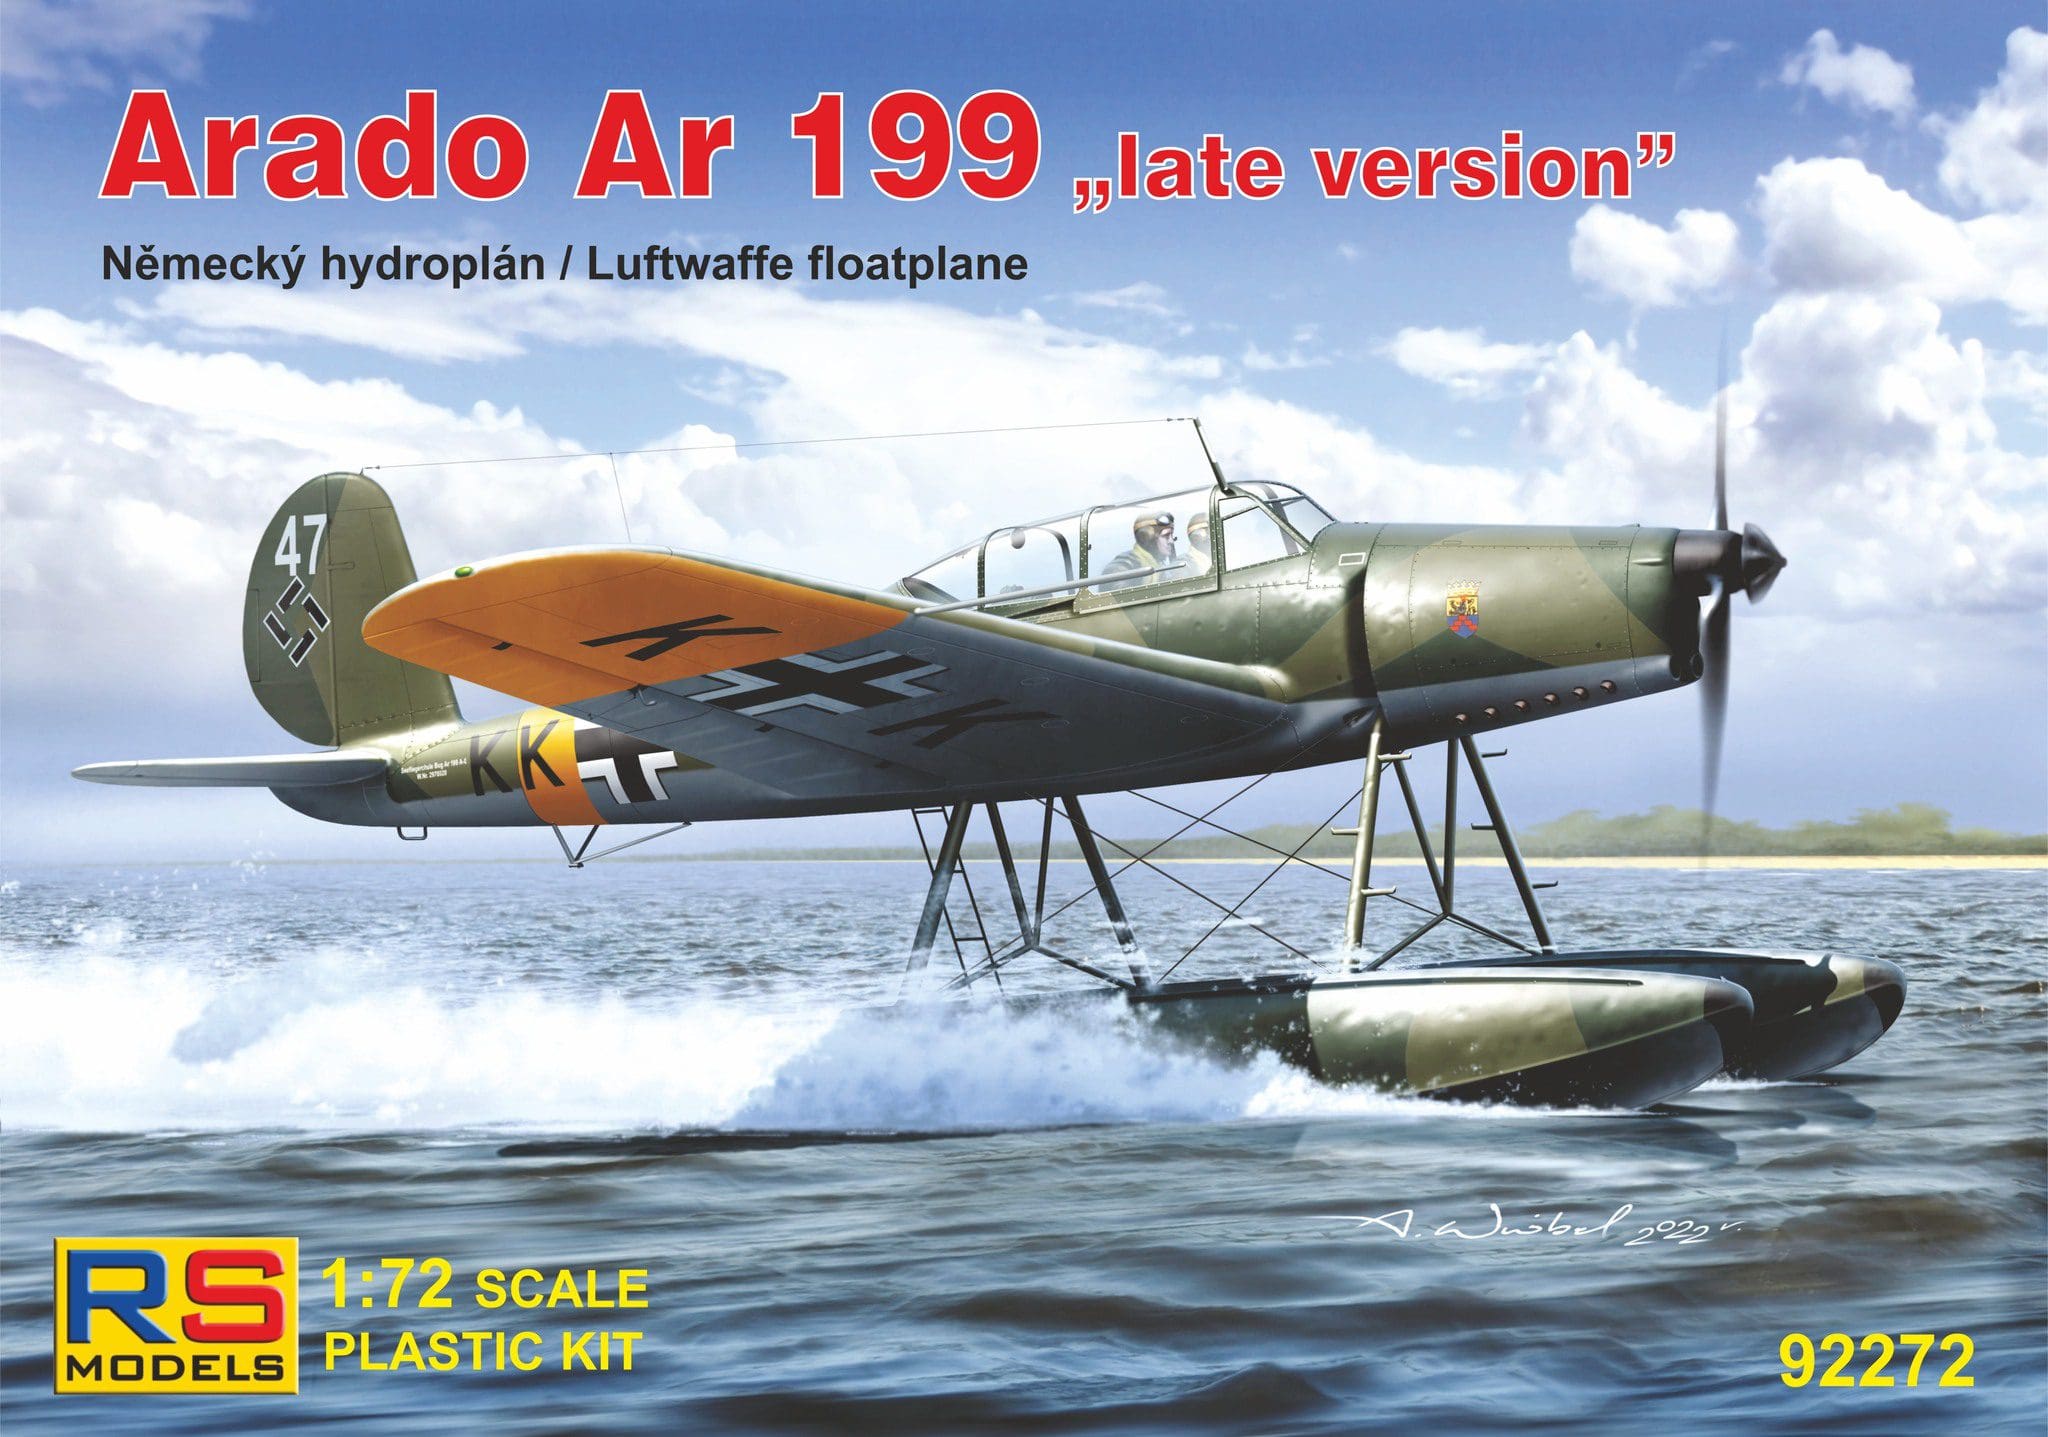 1:72 Modèle en Plastique Kit Nouveauté Cz Rs Models Lw Arado Ar-396 